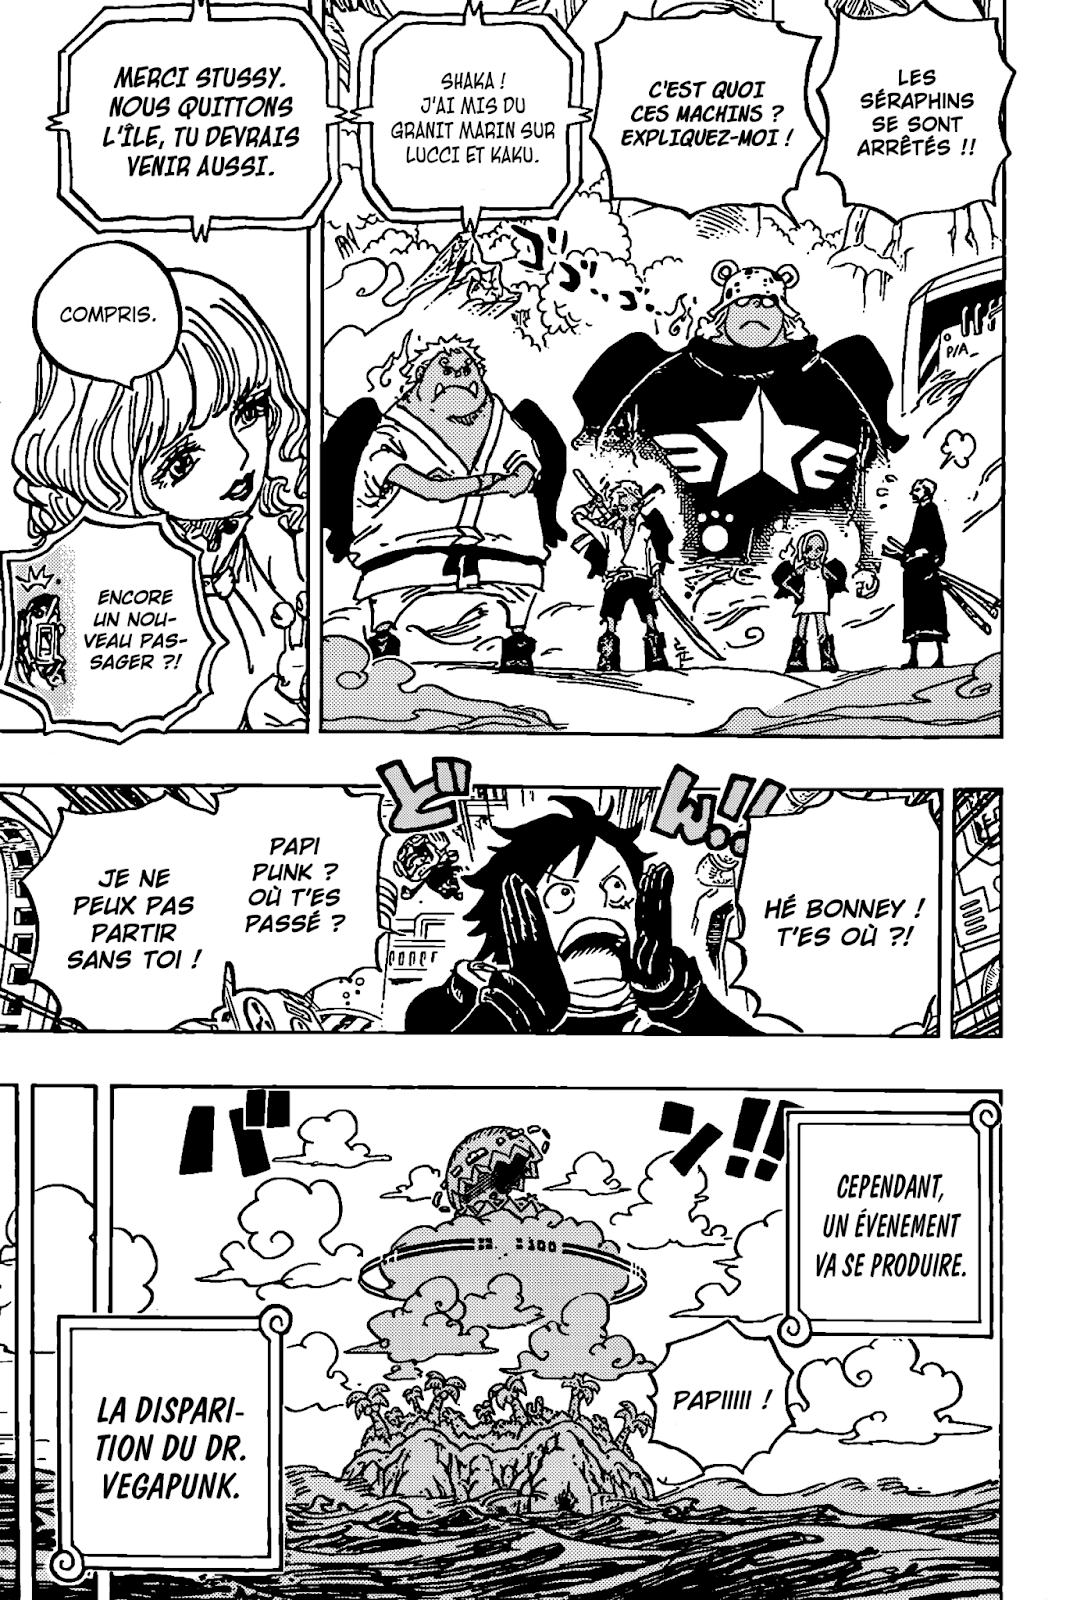 One Piece Chapitre 1074 Spoilers Reddit : Le passé de Kuma enfin révélé ! 8 pasted image 0